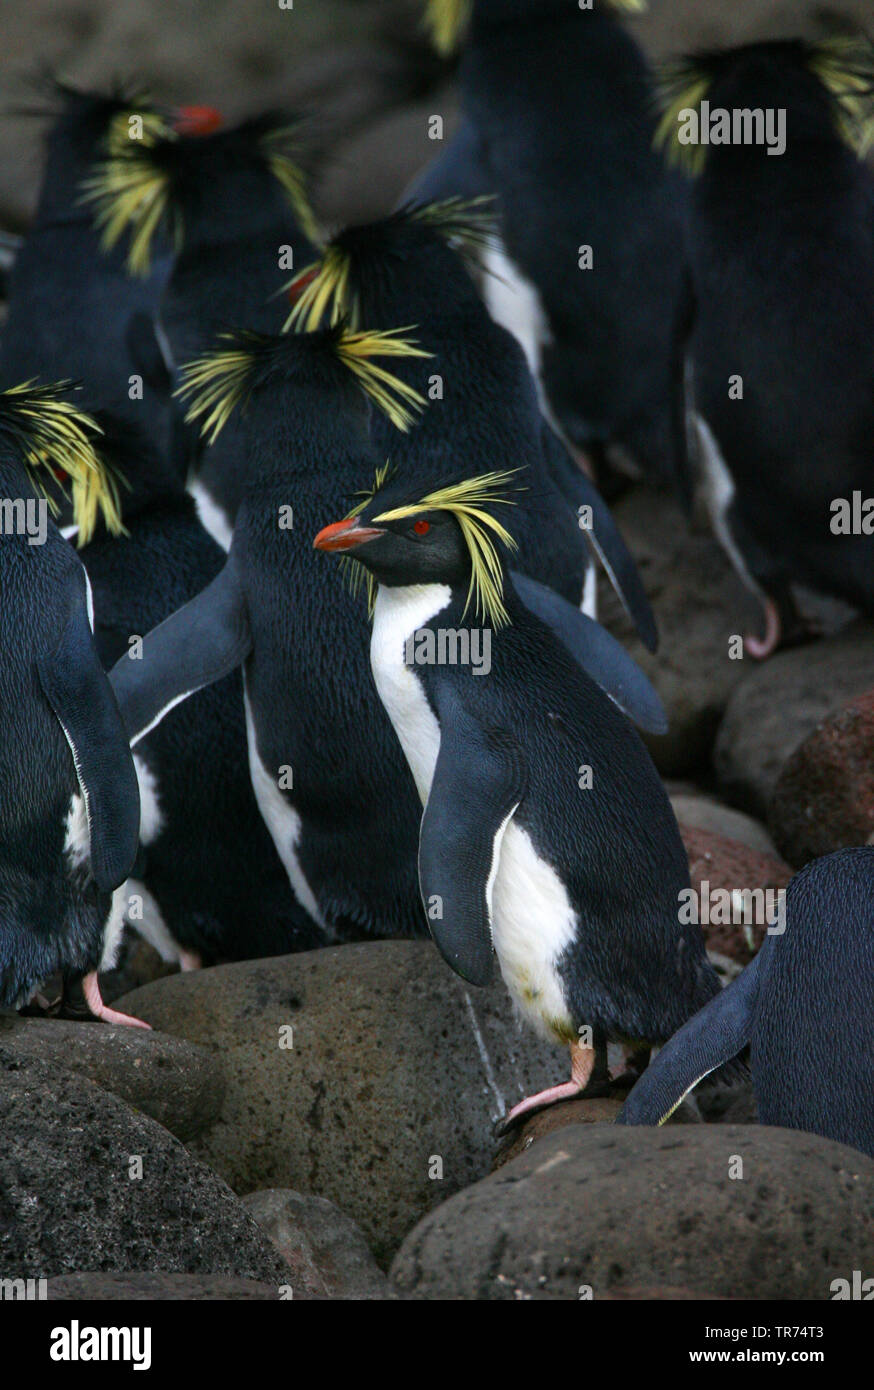 Northern rockhopper penguin, Moseley's rockhopper penguin, Moseley's penguin (Eudyptes moseleyi), on the beach of Gough Island, Tristan da Cunha, Gough Island Stock Photo